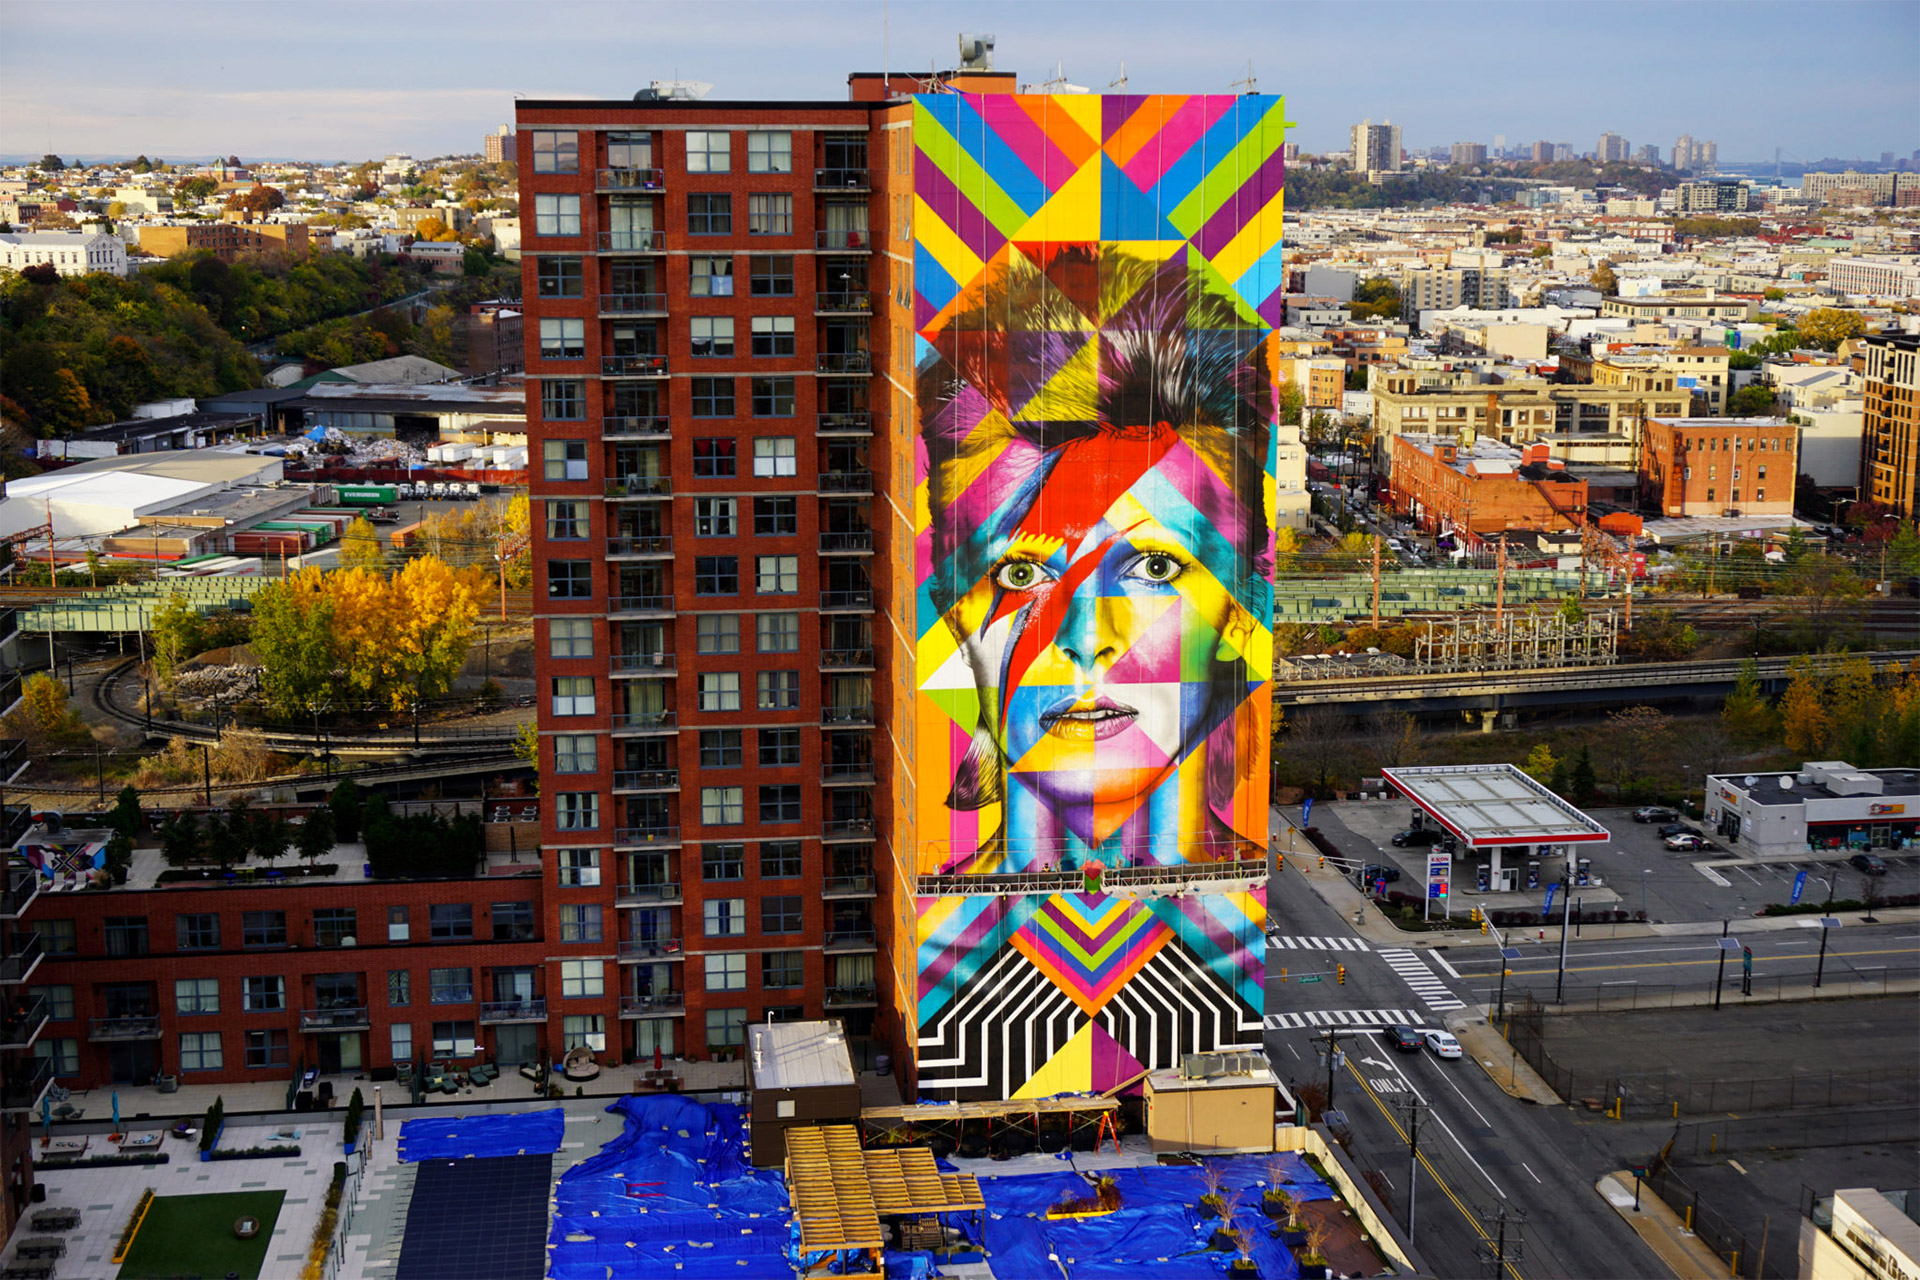 Kaleidoscopic Street Art By Eduardo Kobra Daily Design Inspiration For Creatives Inspiration